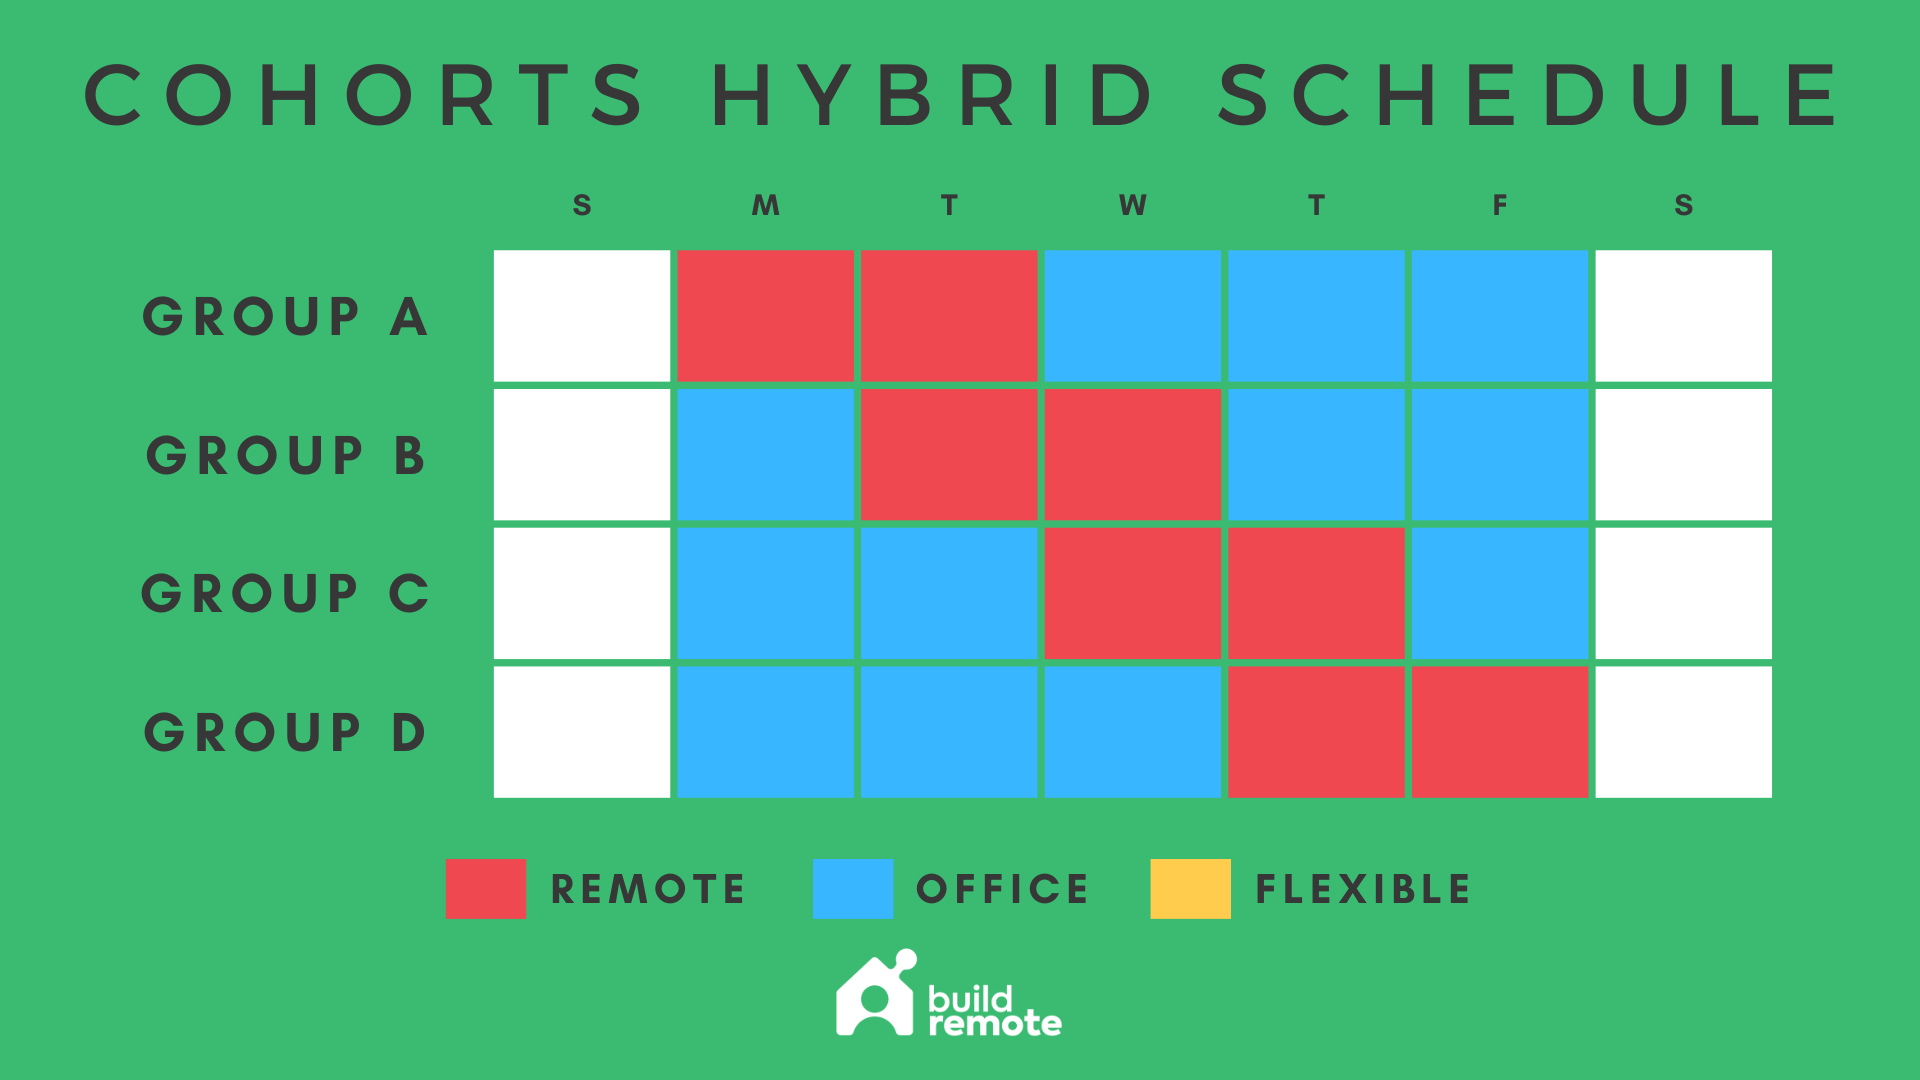 cohorts hybrid work schedule